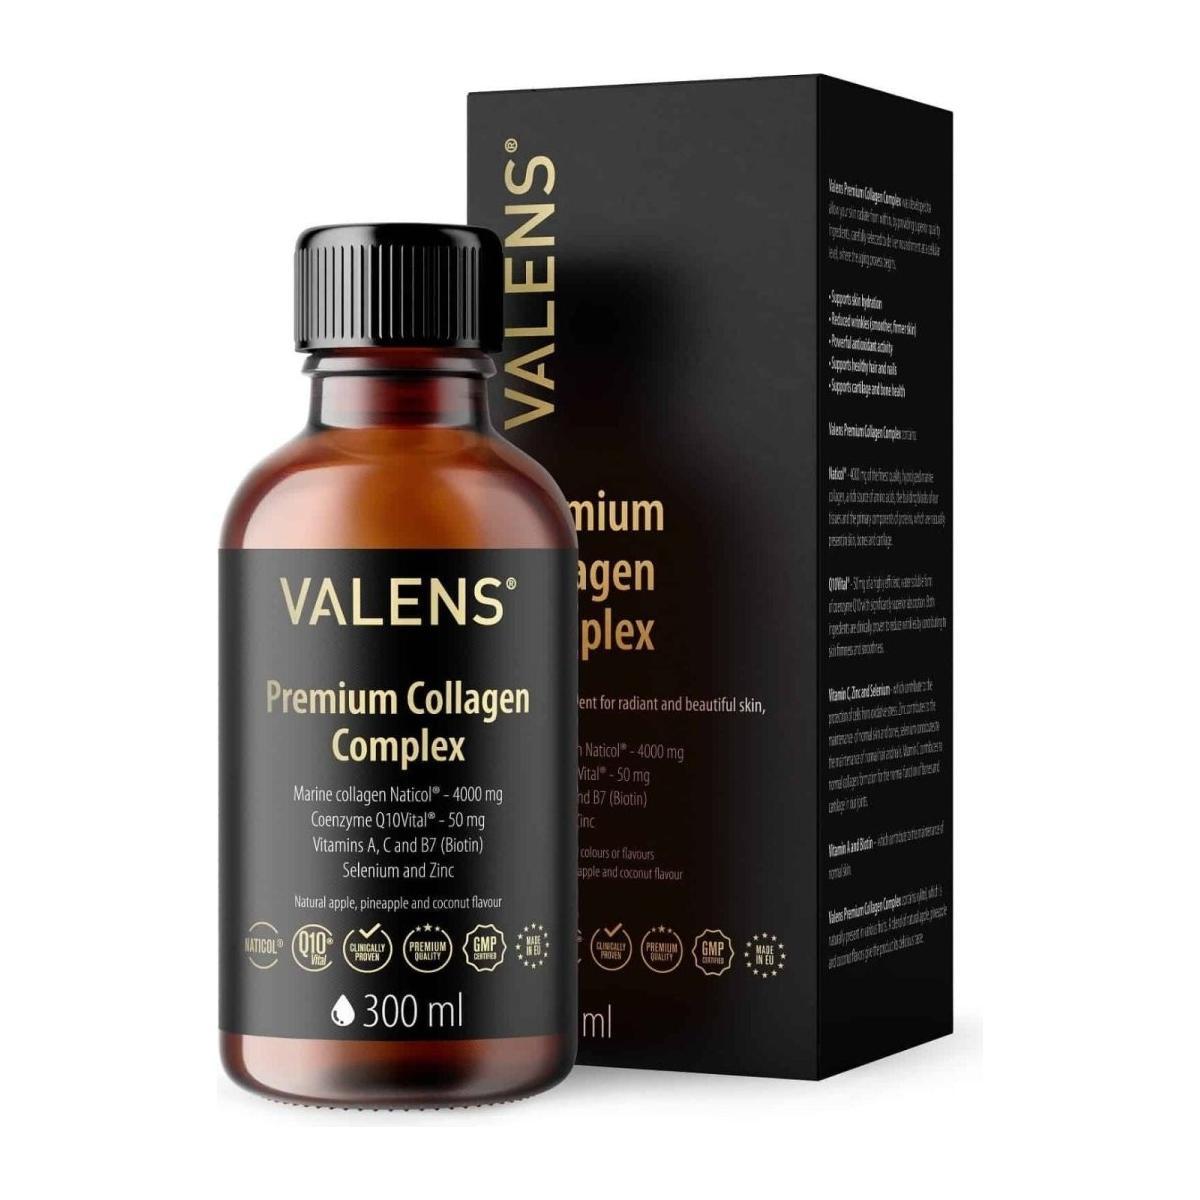 Valens | Premium Collagen Complex | 300ml - DG International Ventures Limited